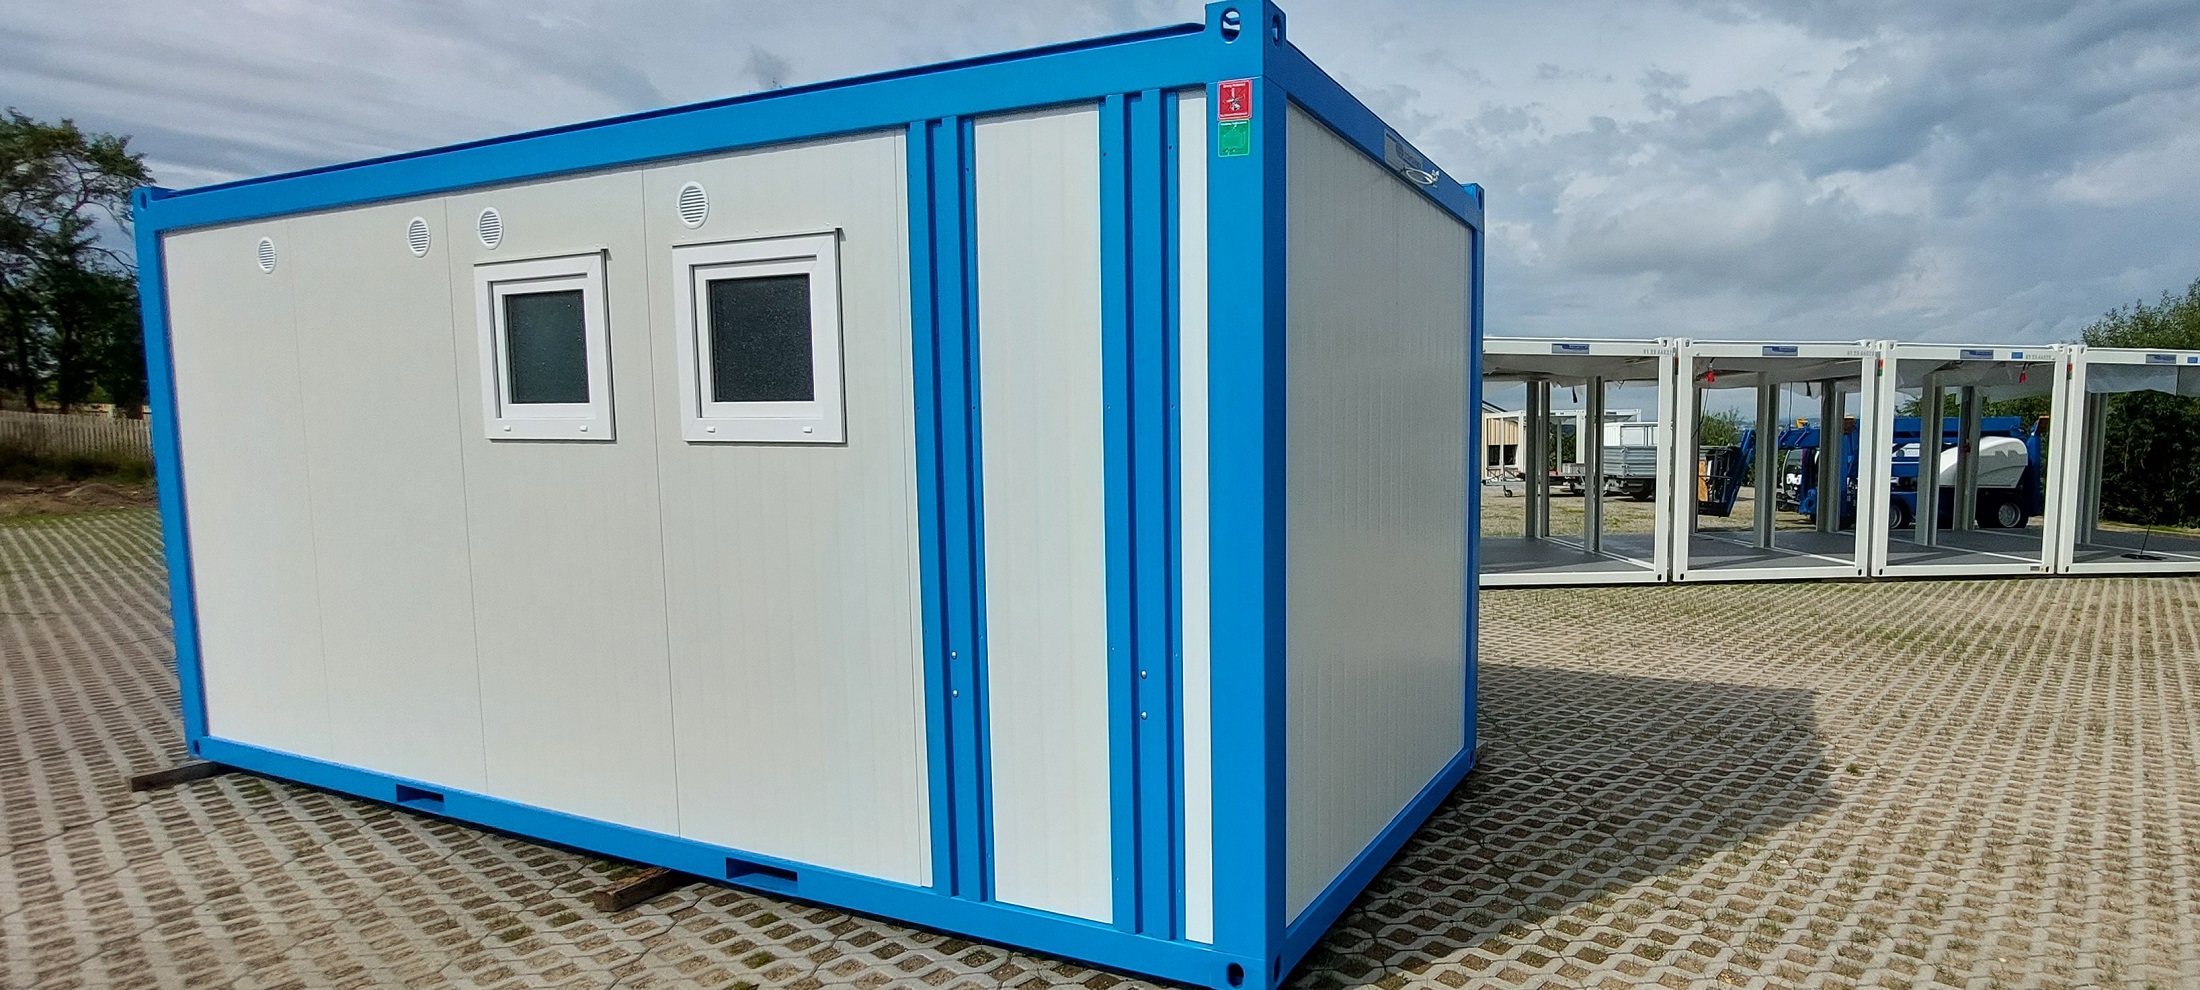 Sanitärcontainer Dusche WC Barrierfrei Giessener Container Modulbau 2